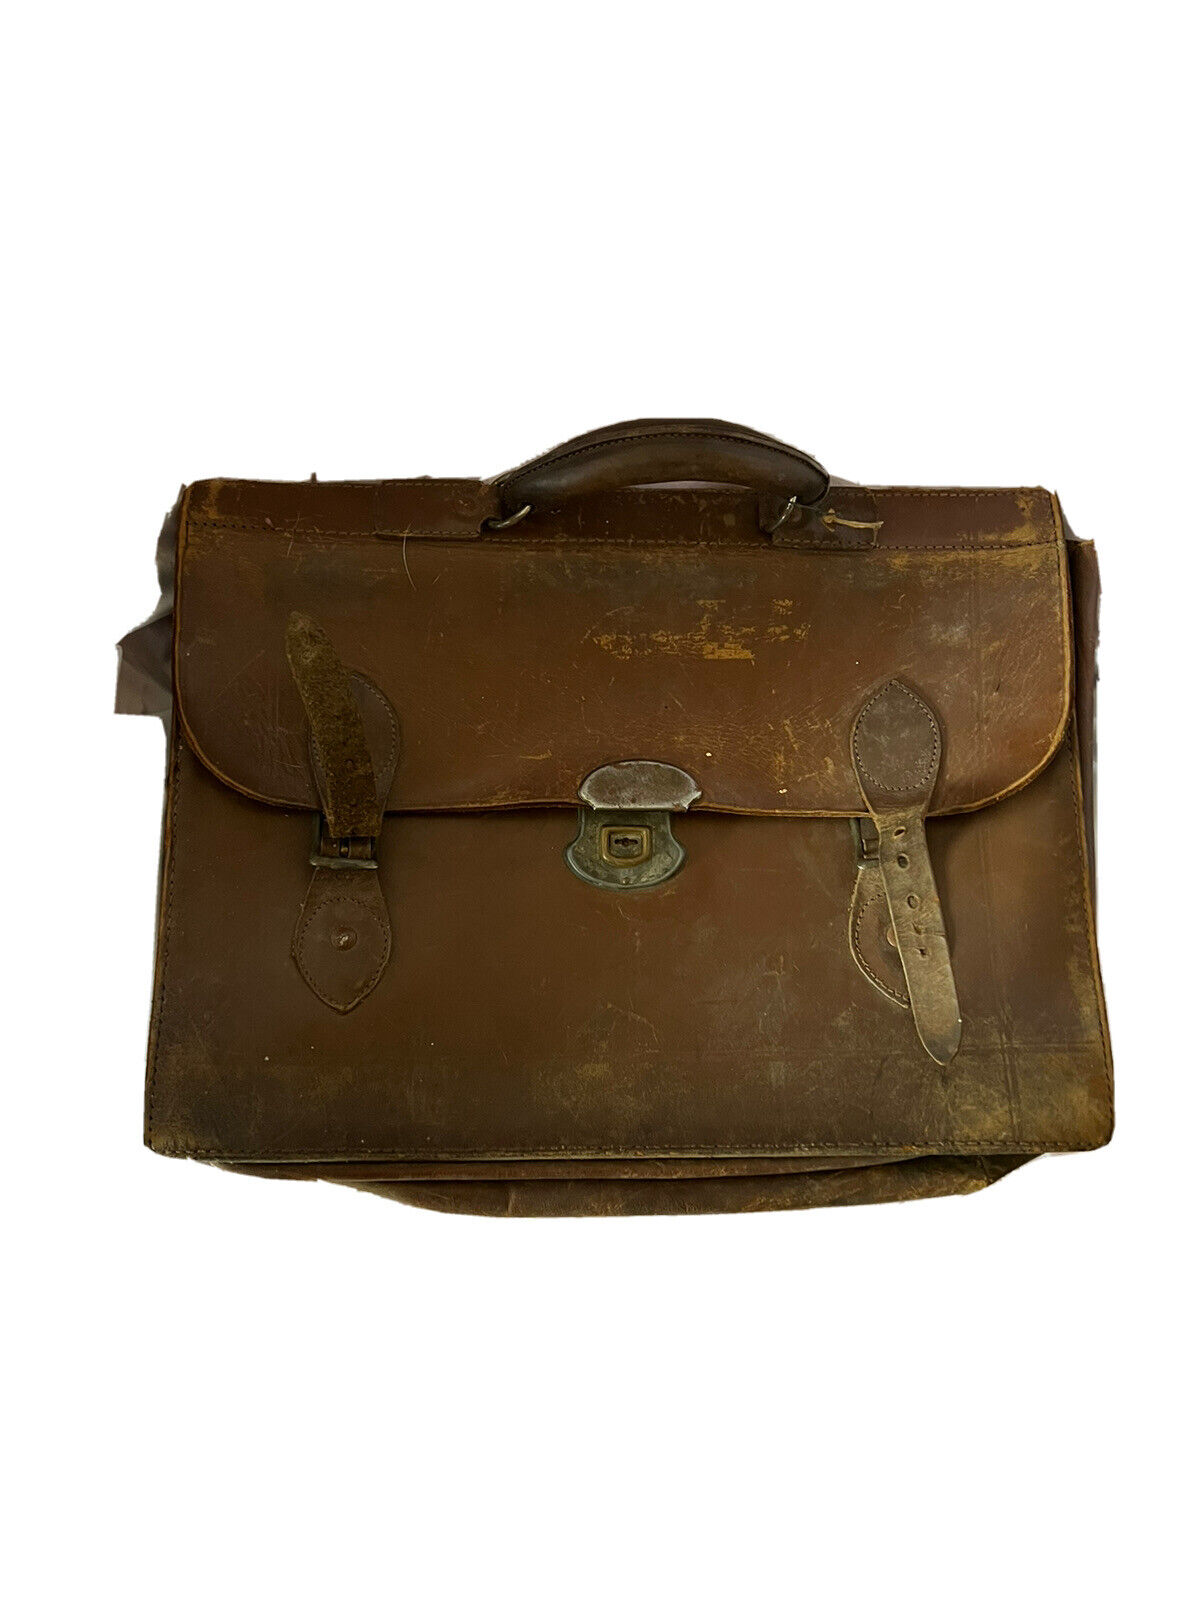 Antique Briefcase 1921 Working Lock